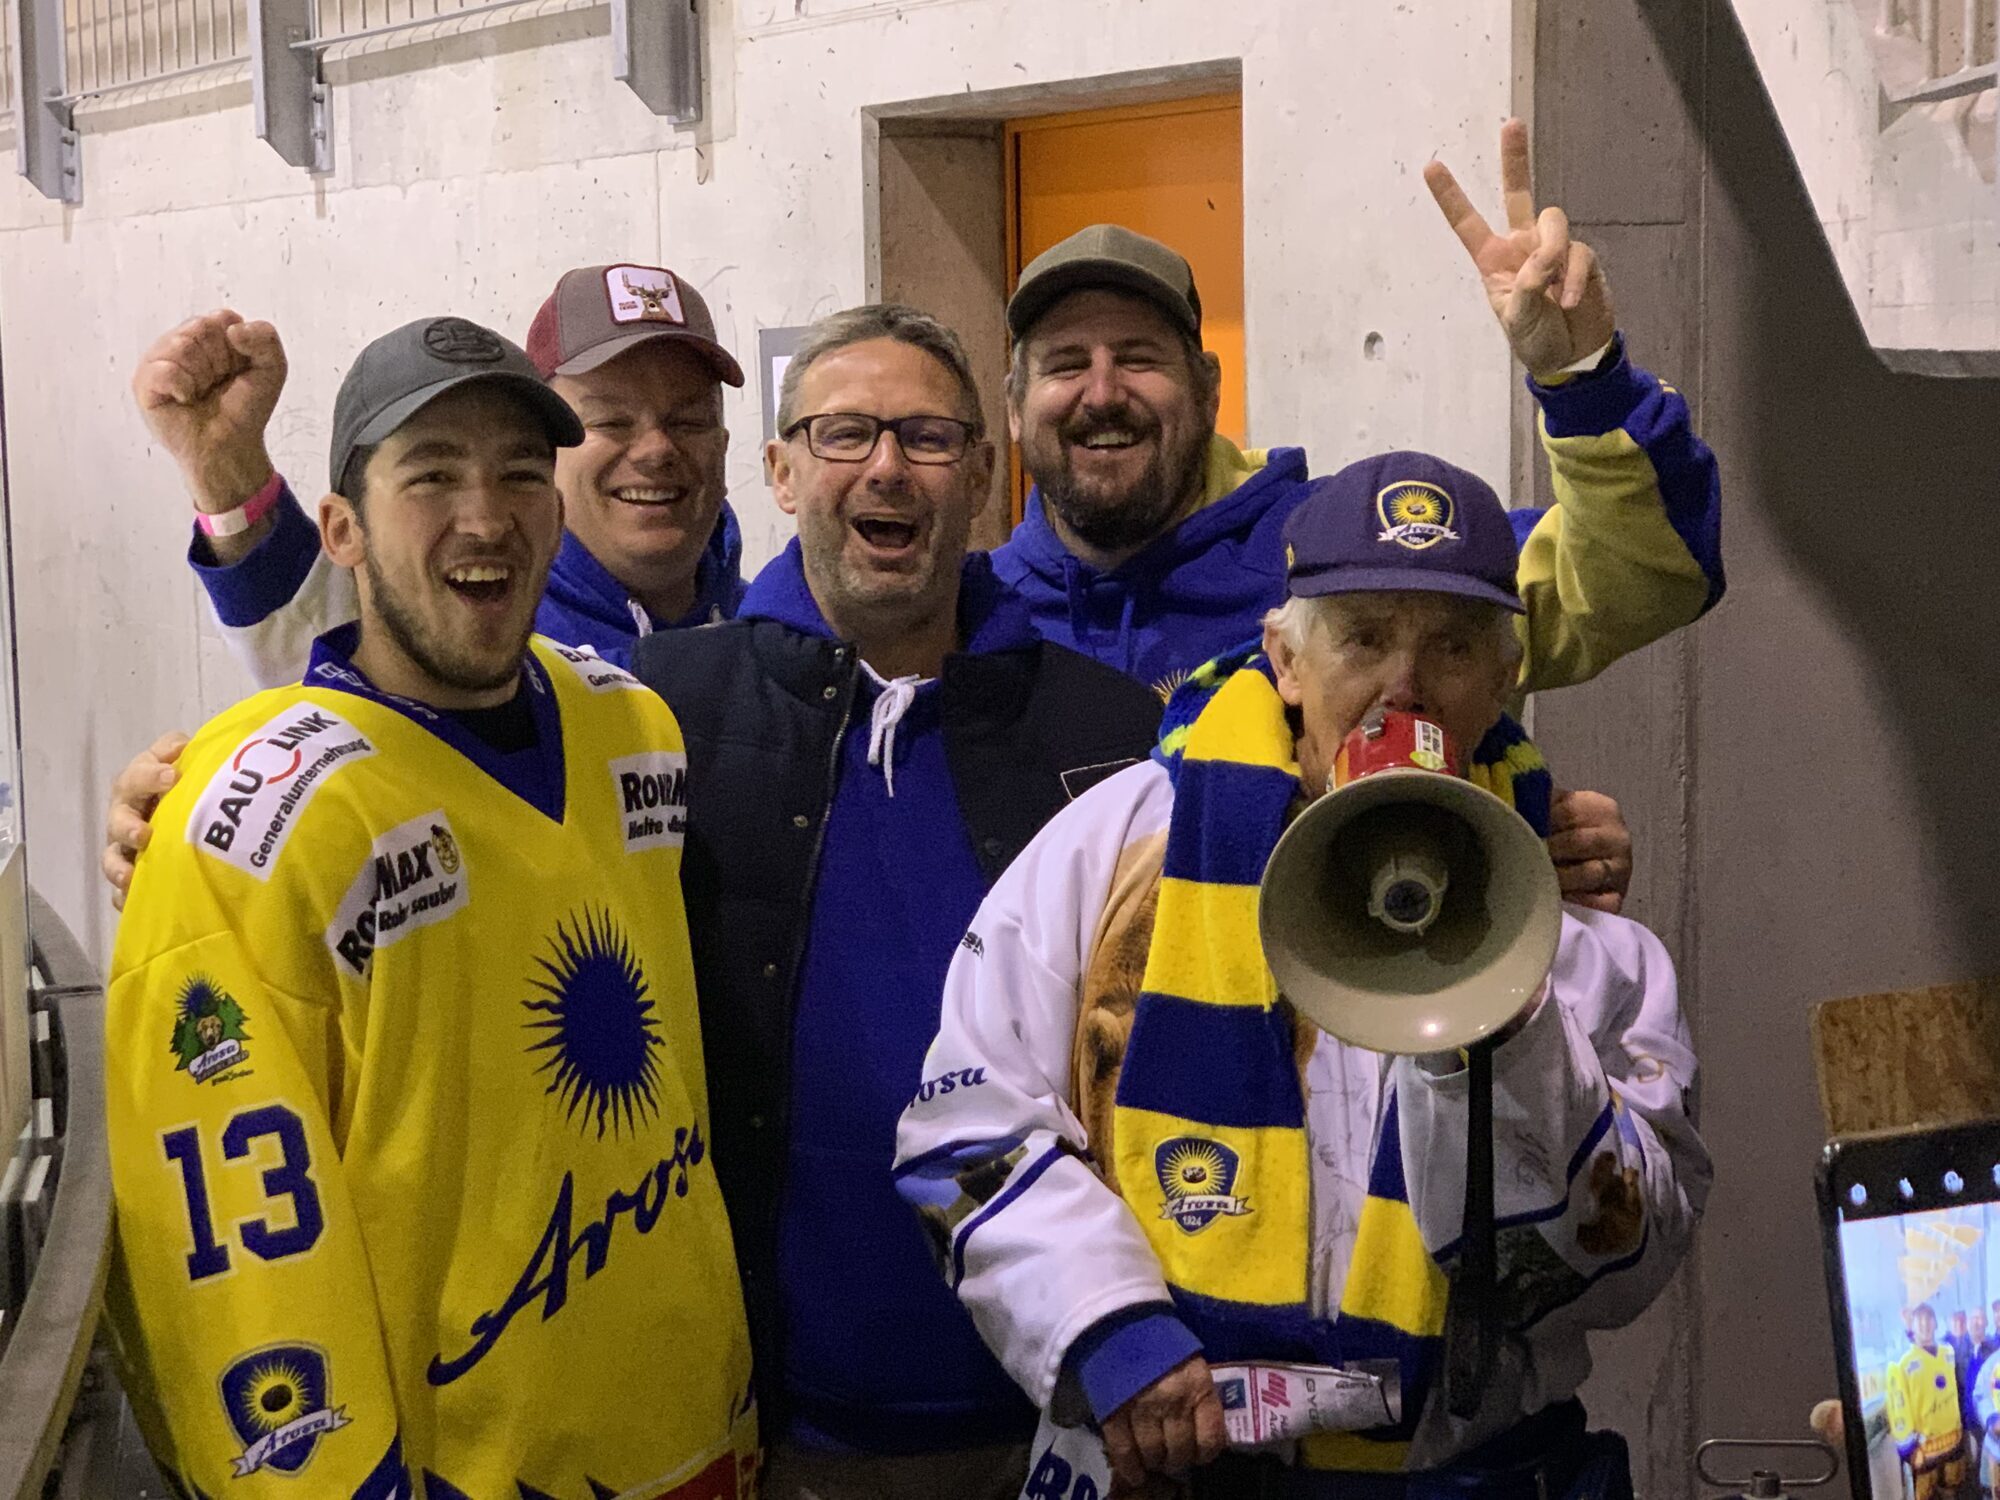 EH Arosa-Verteidiger Mike Kunz und EHC Arosa-Fans in Adelboden nach dem Match